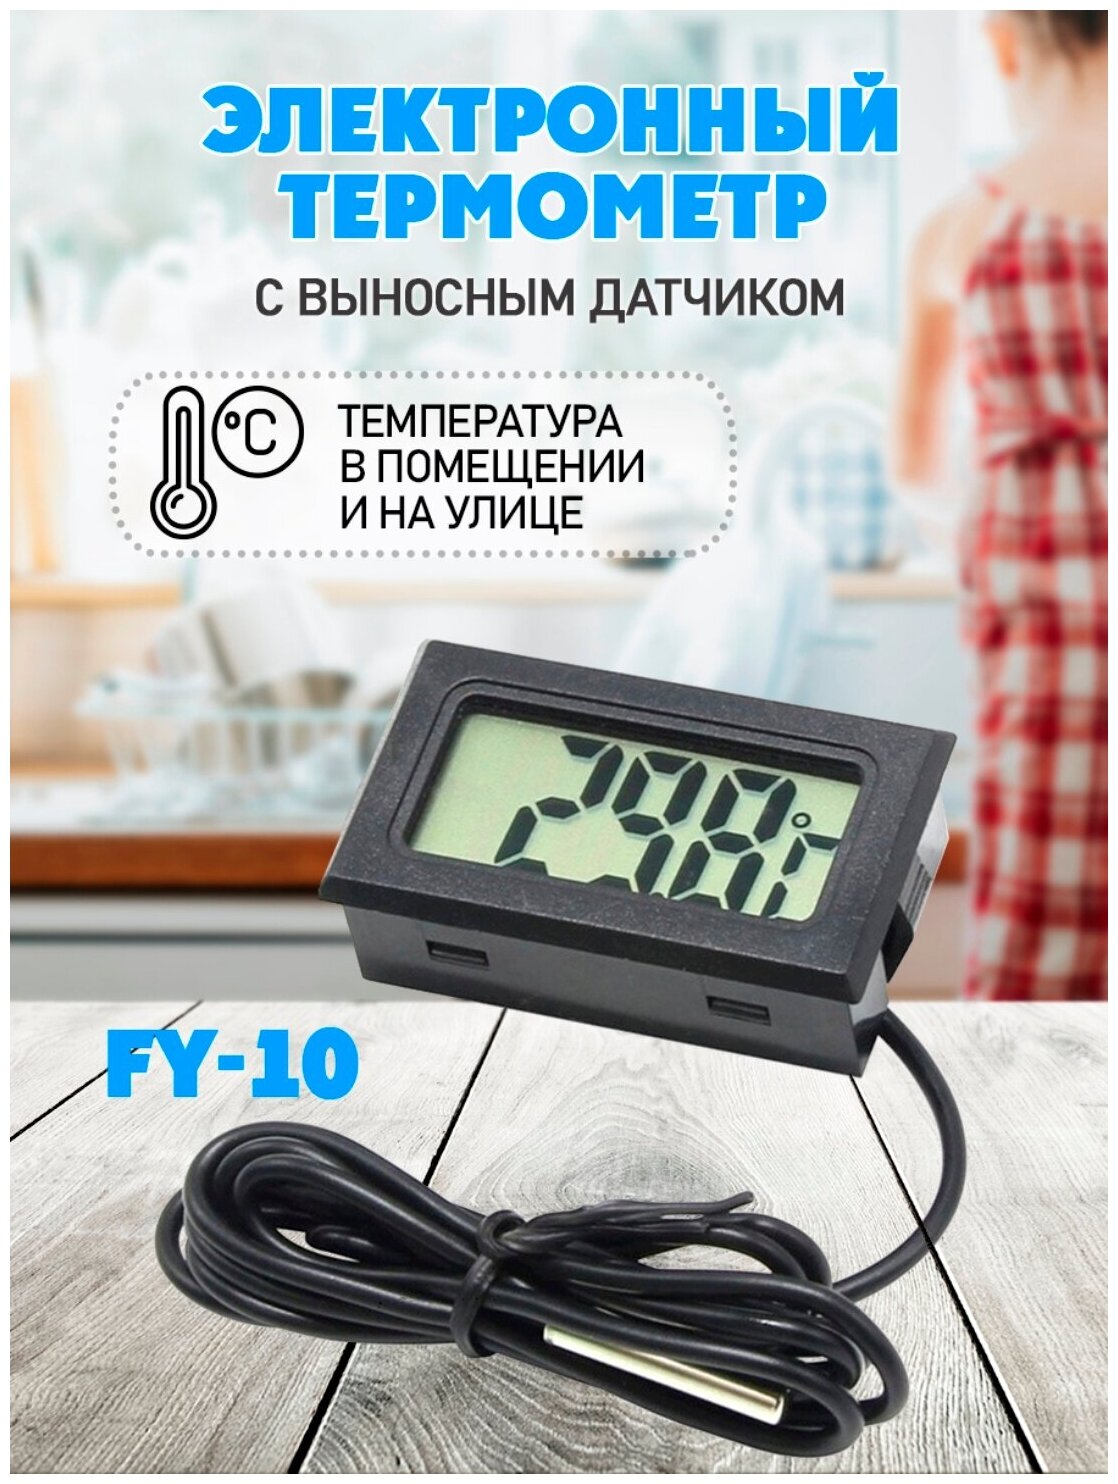 Термометр электронный, FY 10, ЖК дисплей с выносным датчиком - фотография № 1